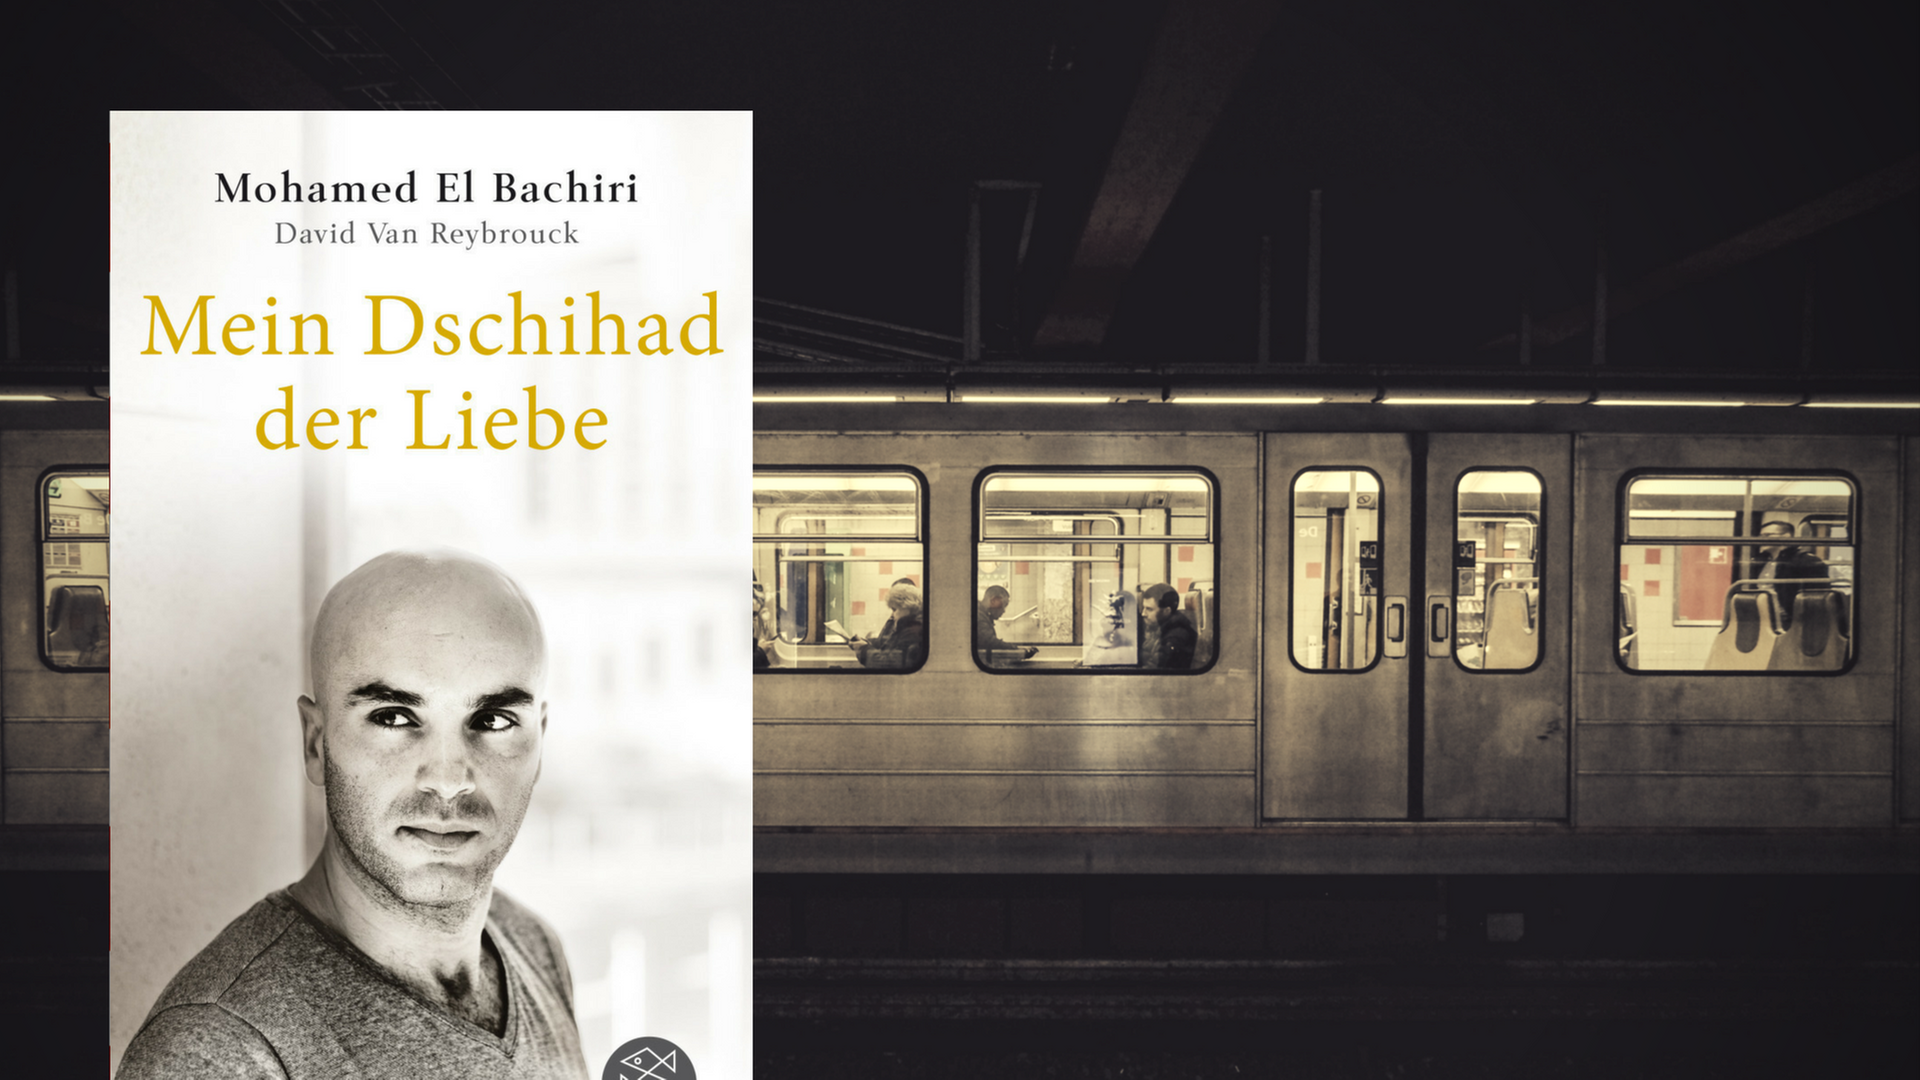 Mohamed El Bachiri, David Van Reybrouck: "Mein Dschihad der Liebe"